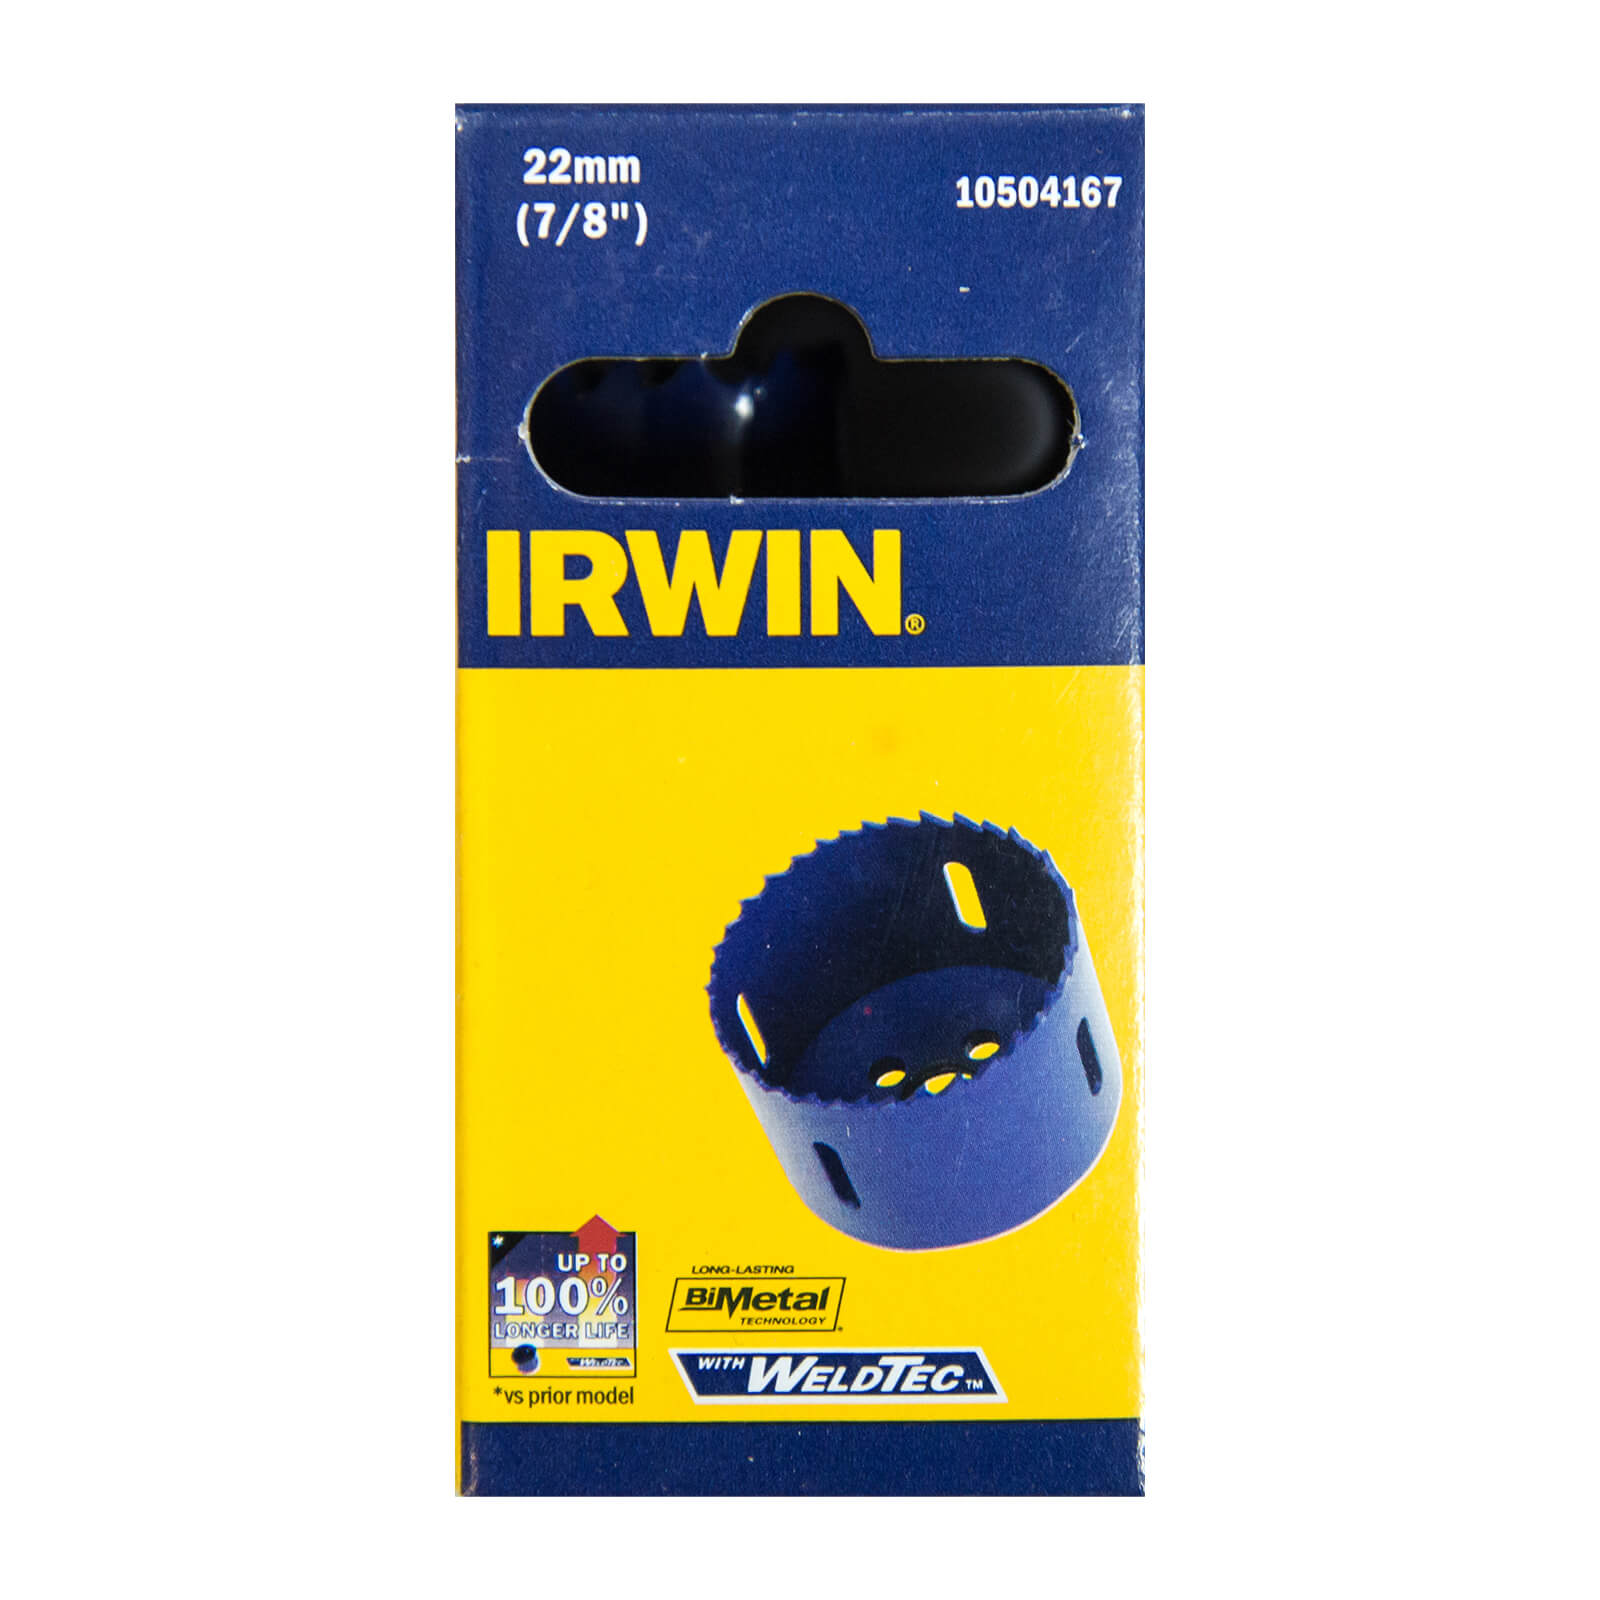 IRWIN Bi-Metal Hole Saw - 22mm